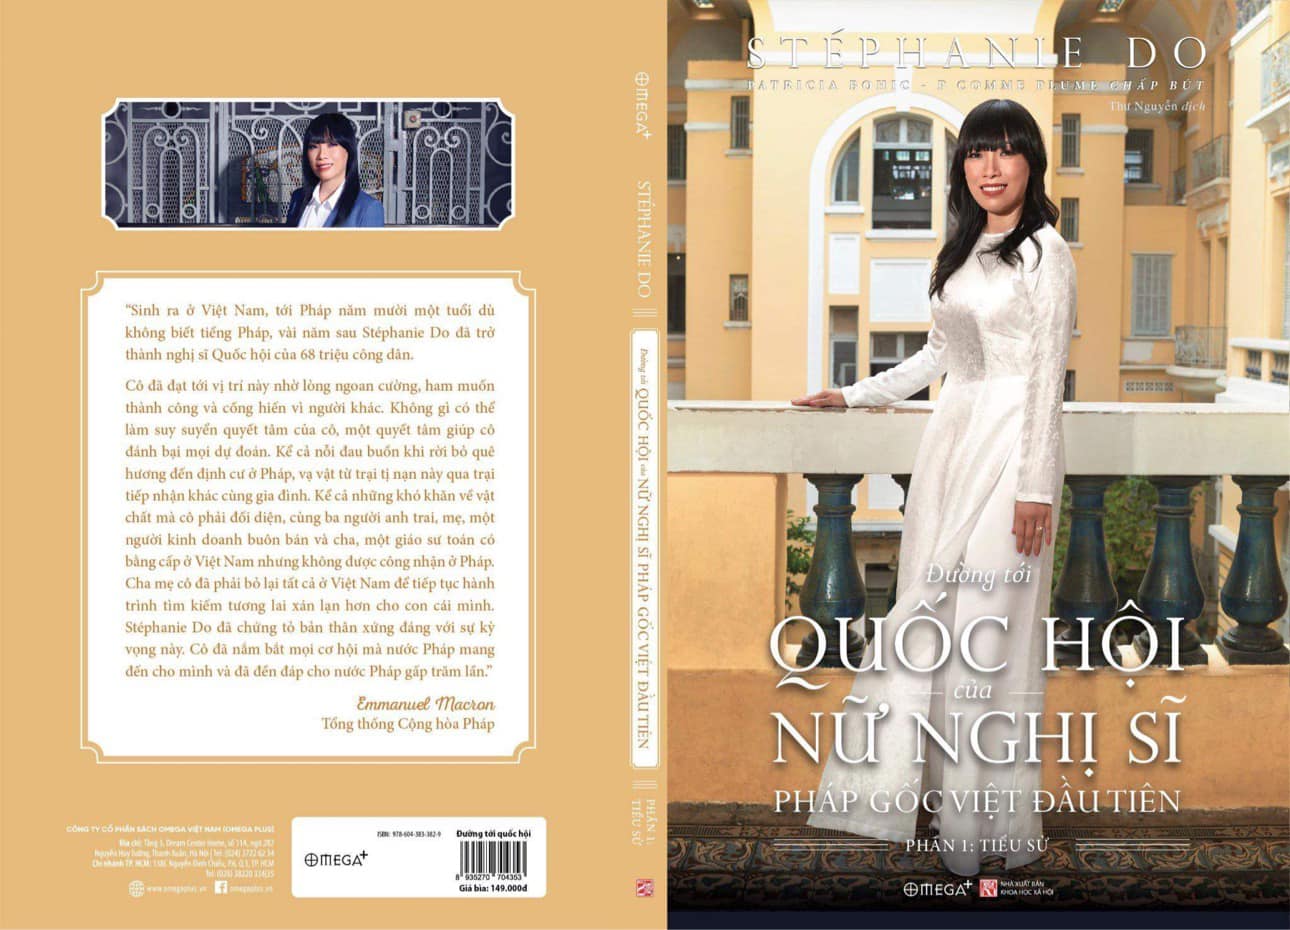 Cuốn sách "Đường tới Quốc hội của Nữ Nghị sĩ Pháp gốc Việt đầu tiên" của Stéphanie Đỗ